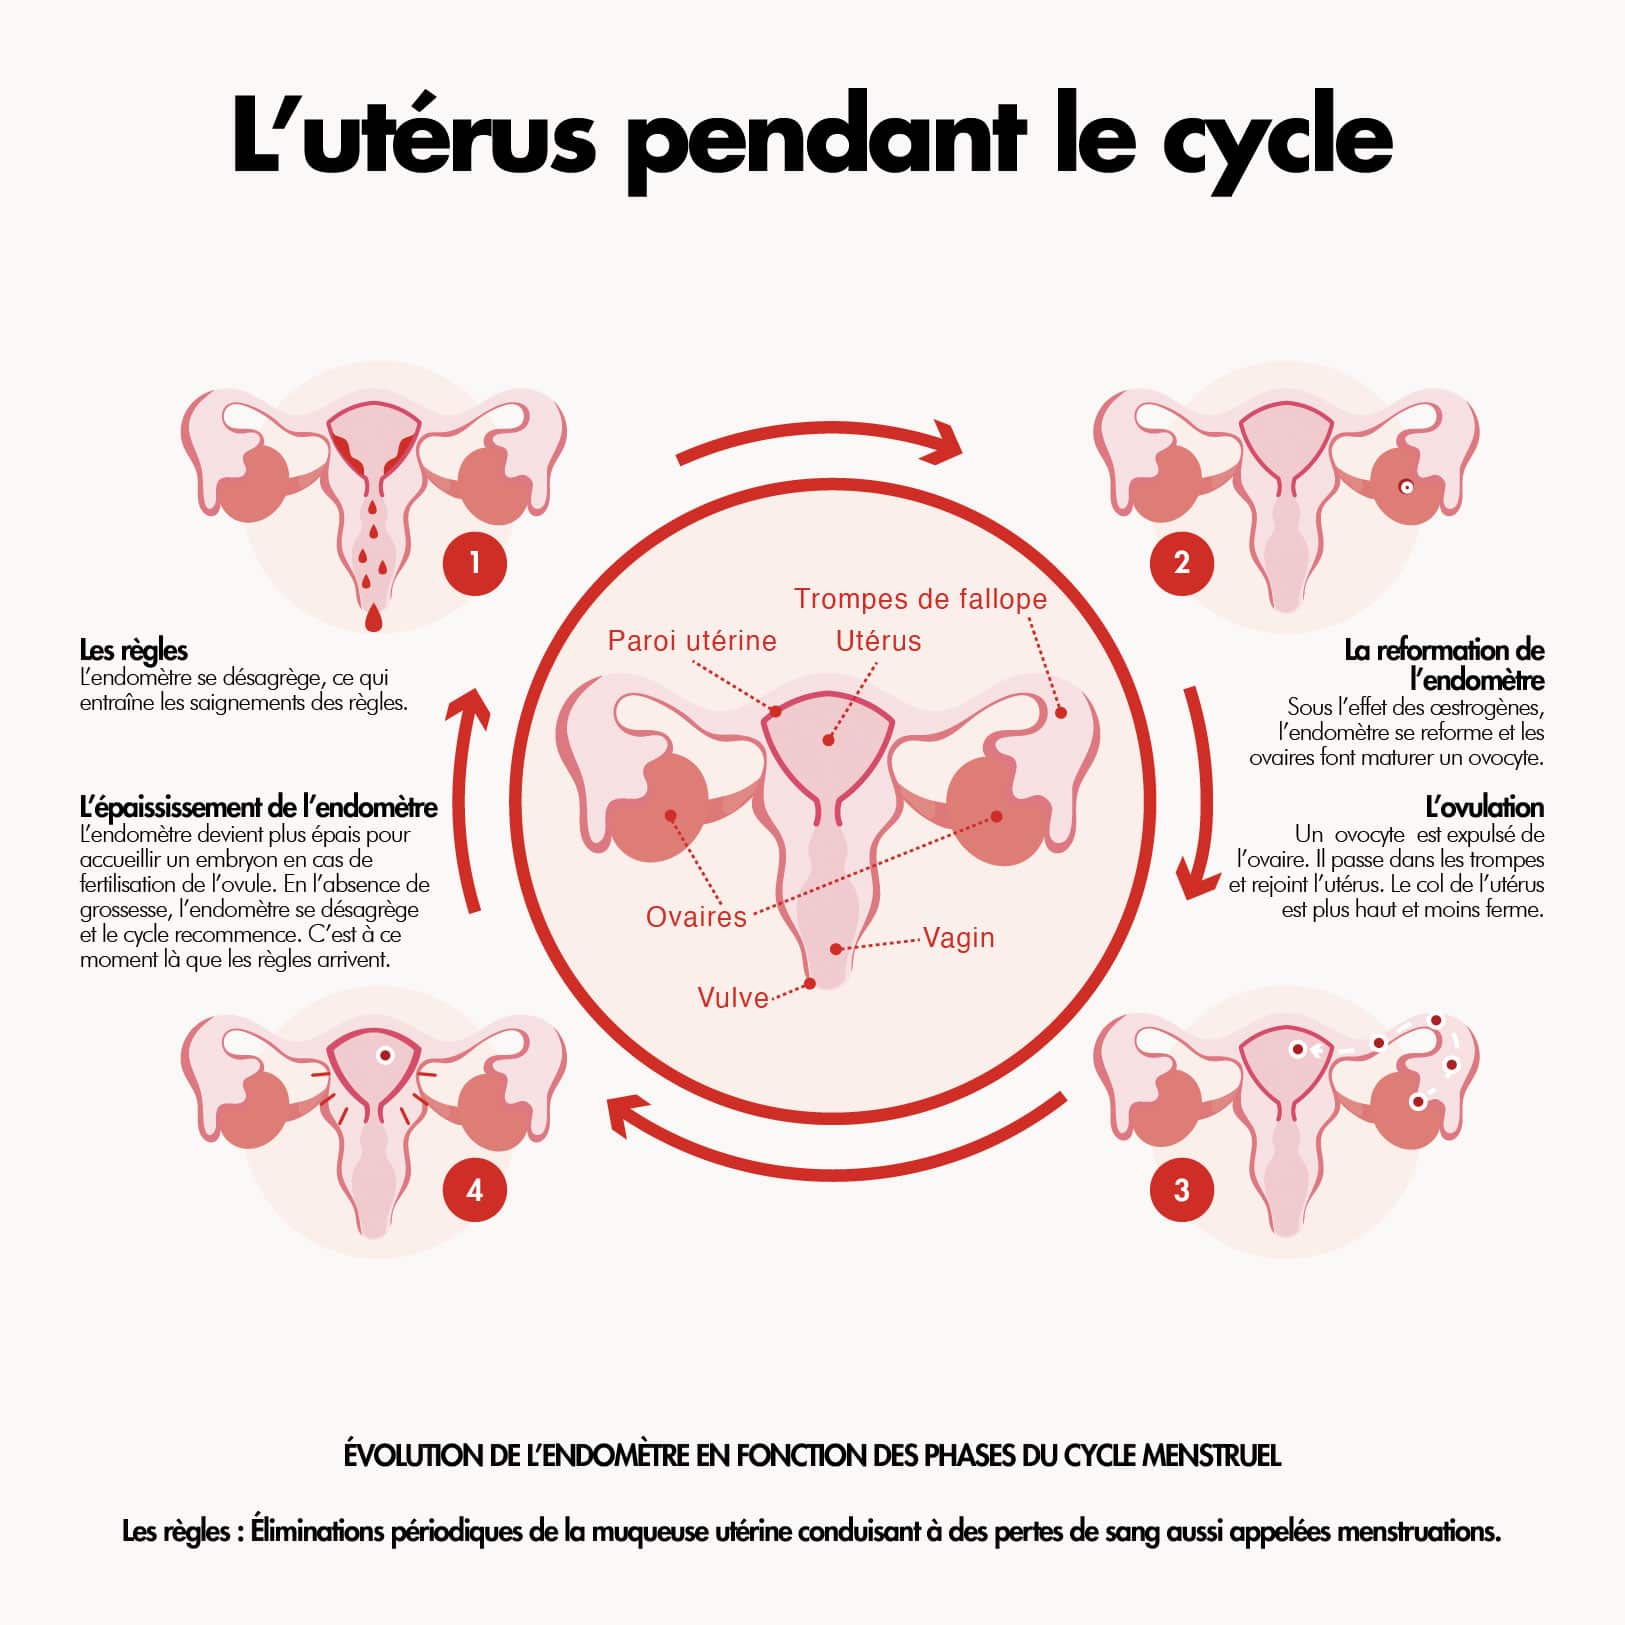 Le cycle menstruel fonctionnement de l'utérus pendant le cycle